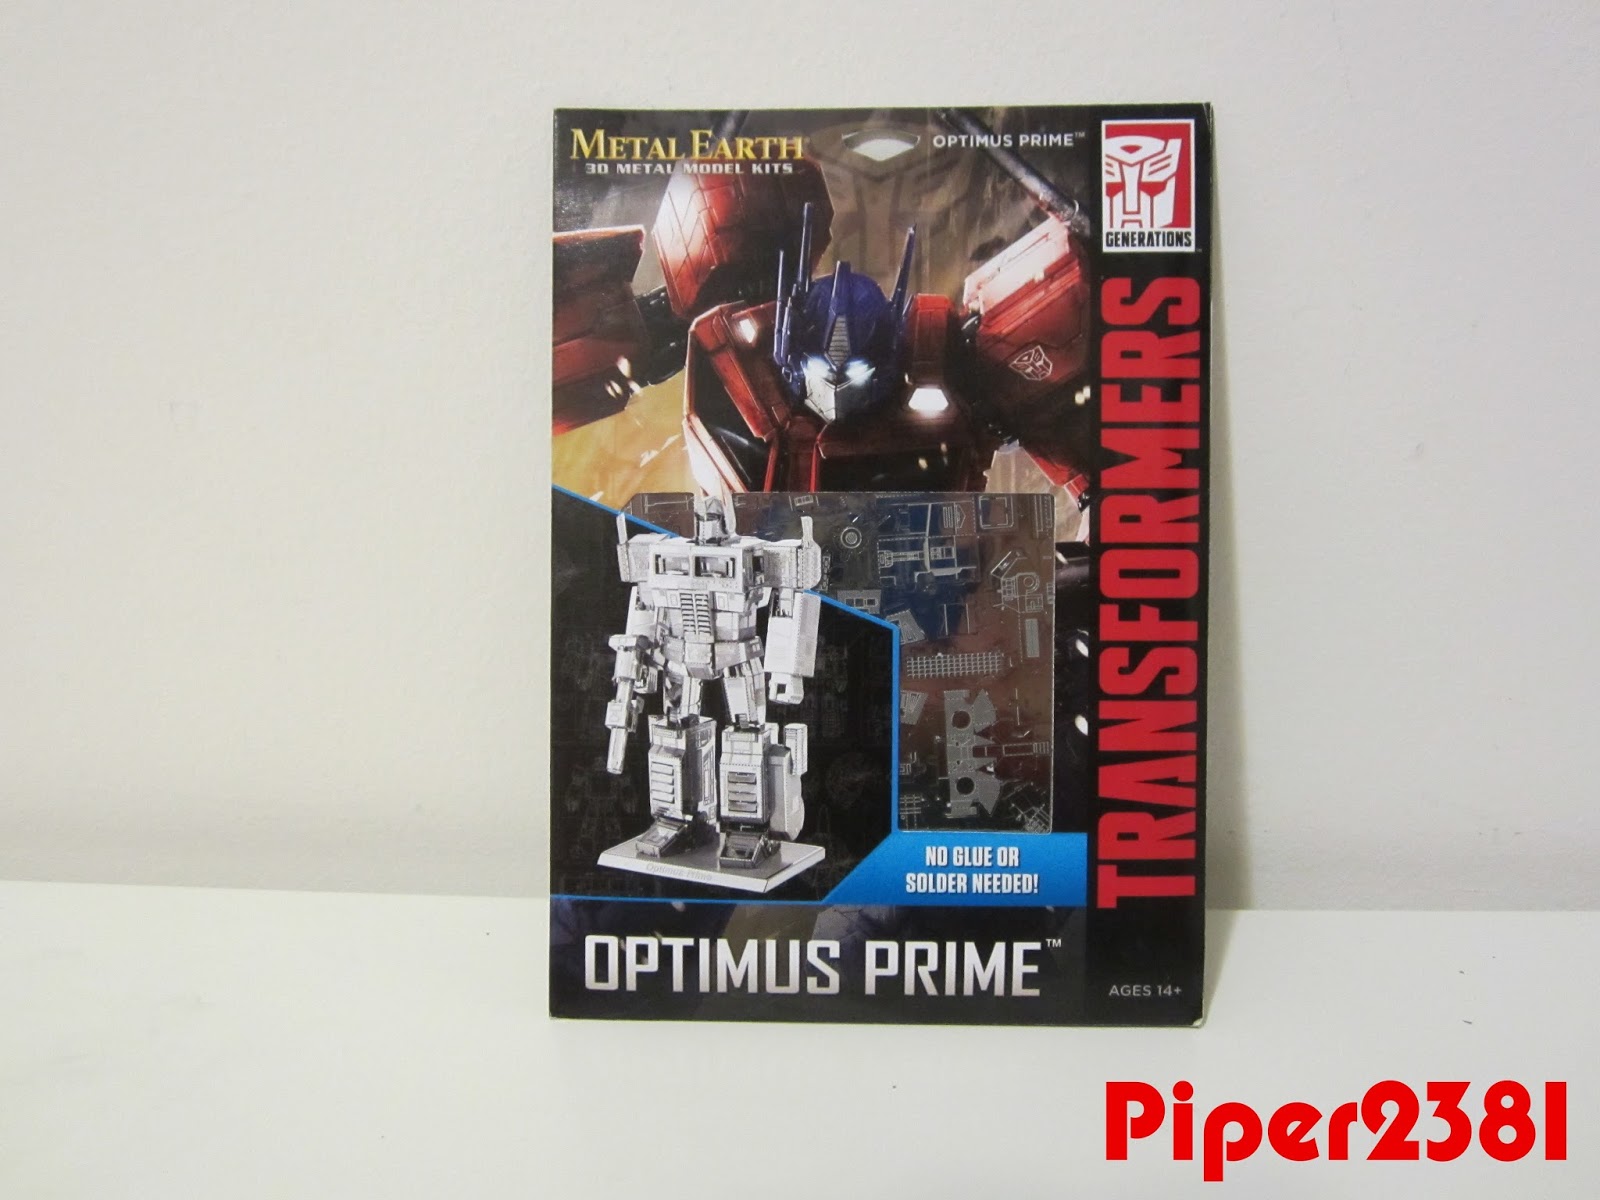 Piper2381: Metal Earth 3D Metal Model Kits: Optimus Prime